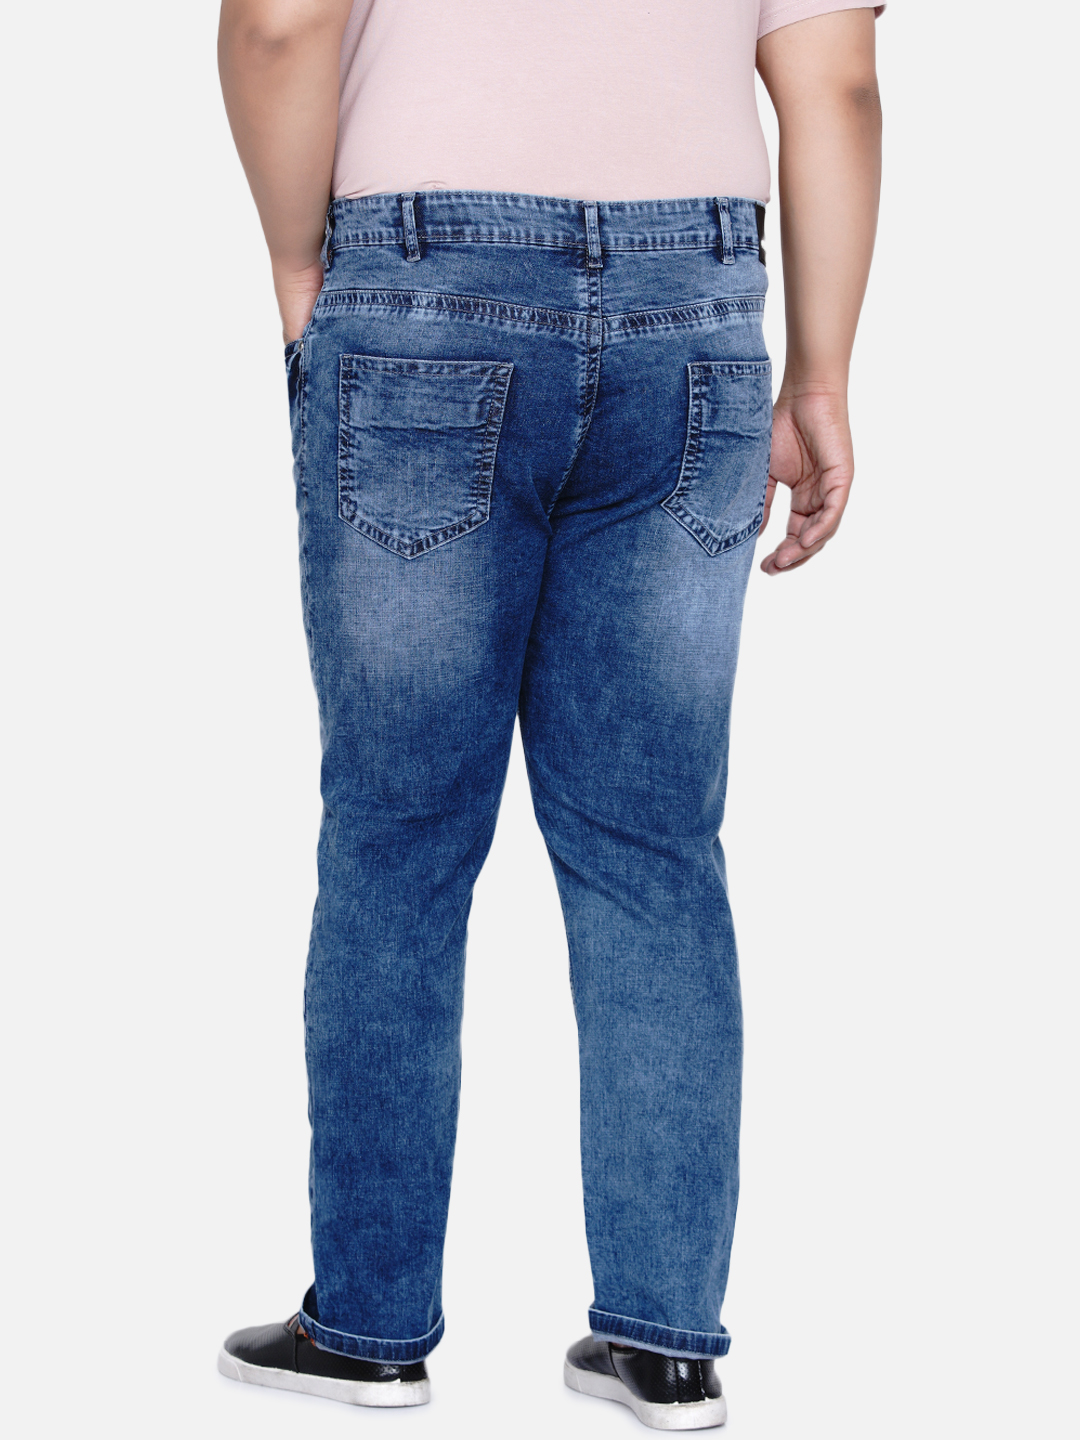 bottomwear/jeans/JPJ6034/jpj6034-5.jpg